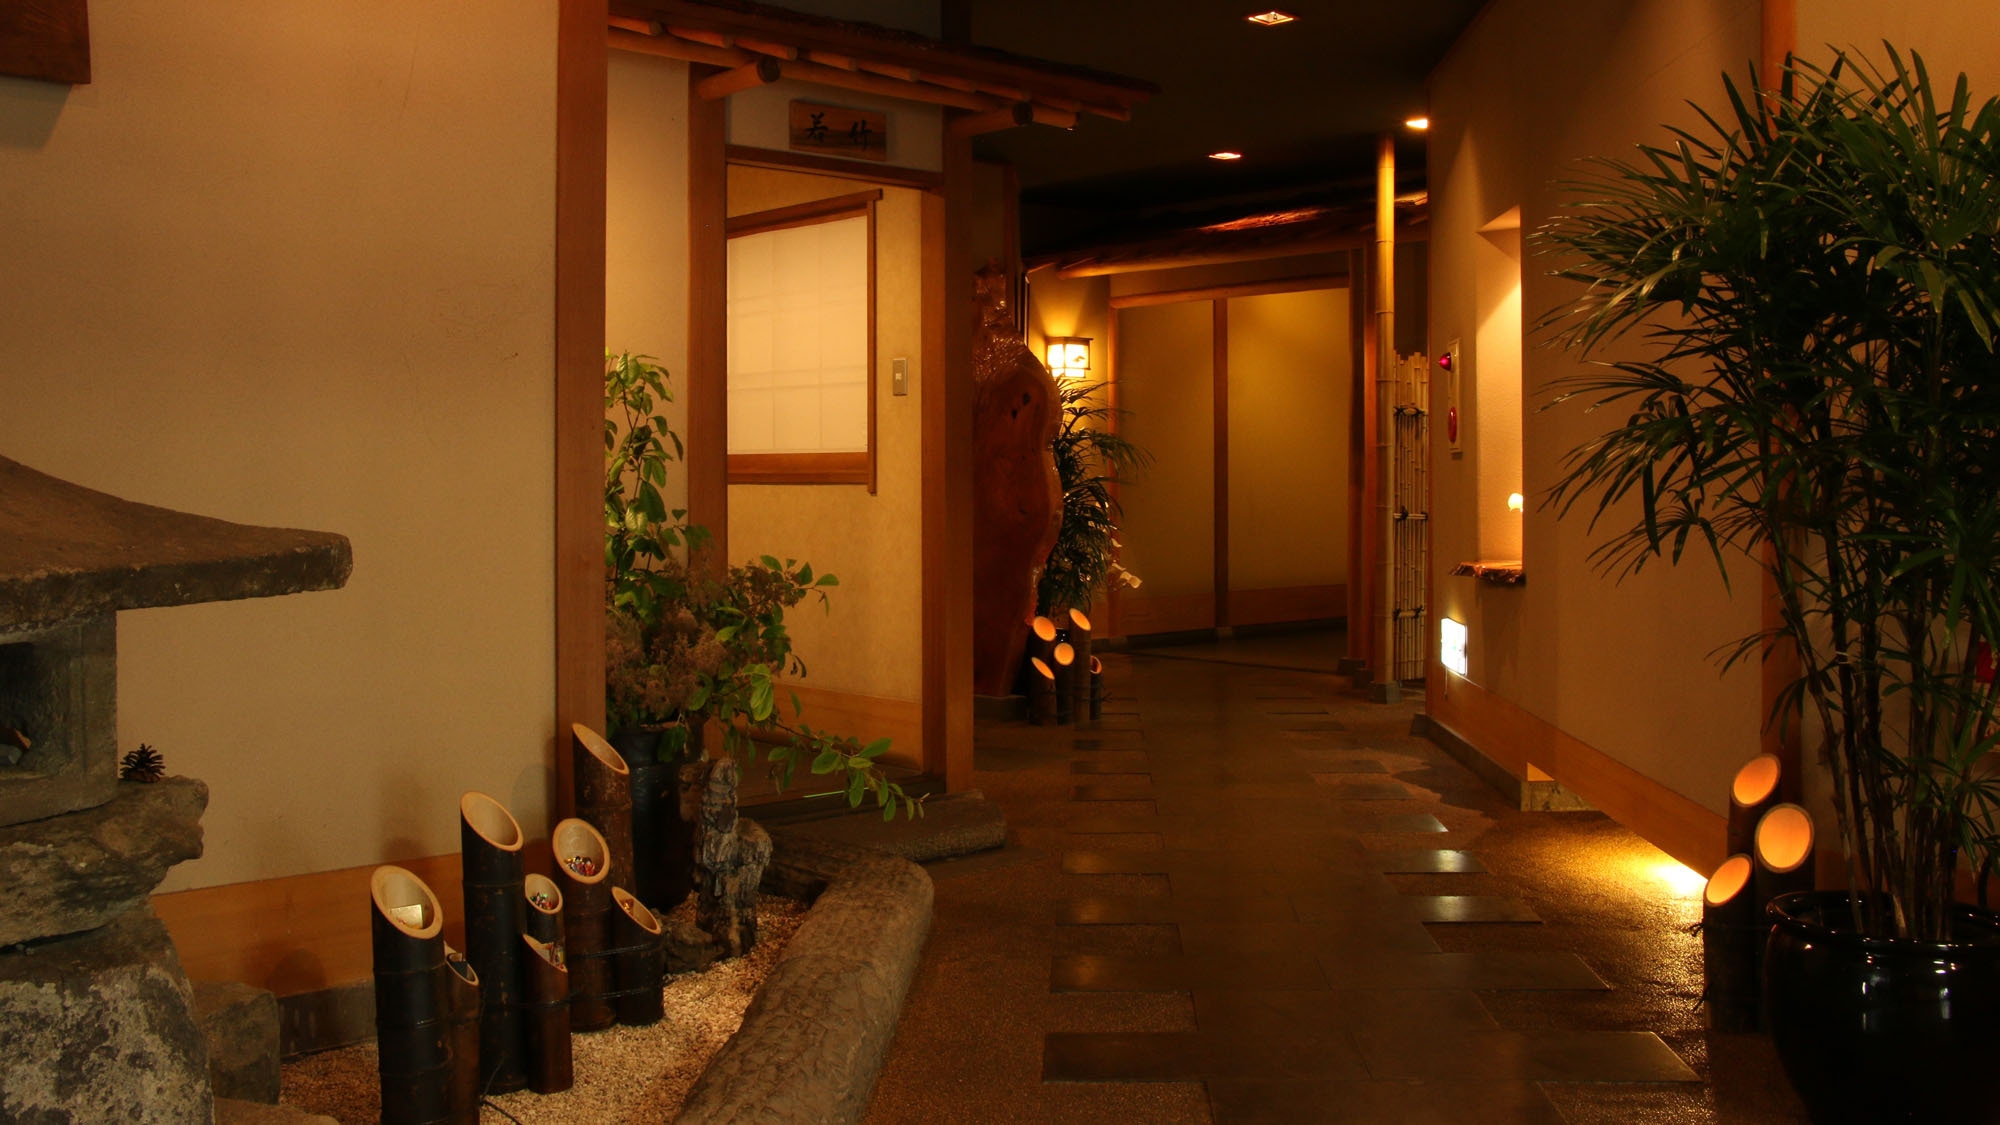 朝からチョイス♪割烹旅館「一竹」の朝御膳を召し上がれ♪嬉しい温泉入浴券付き♪